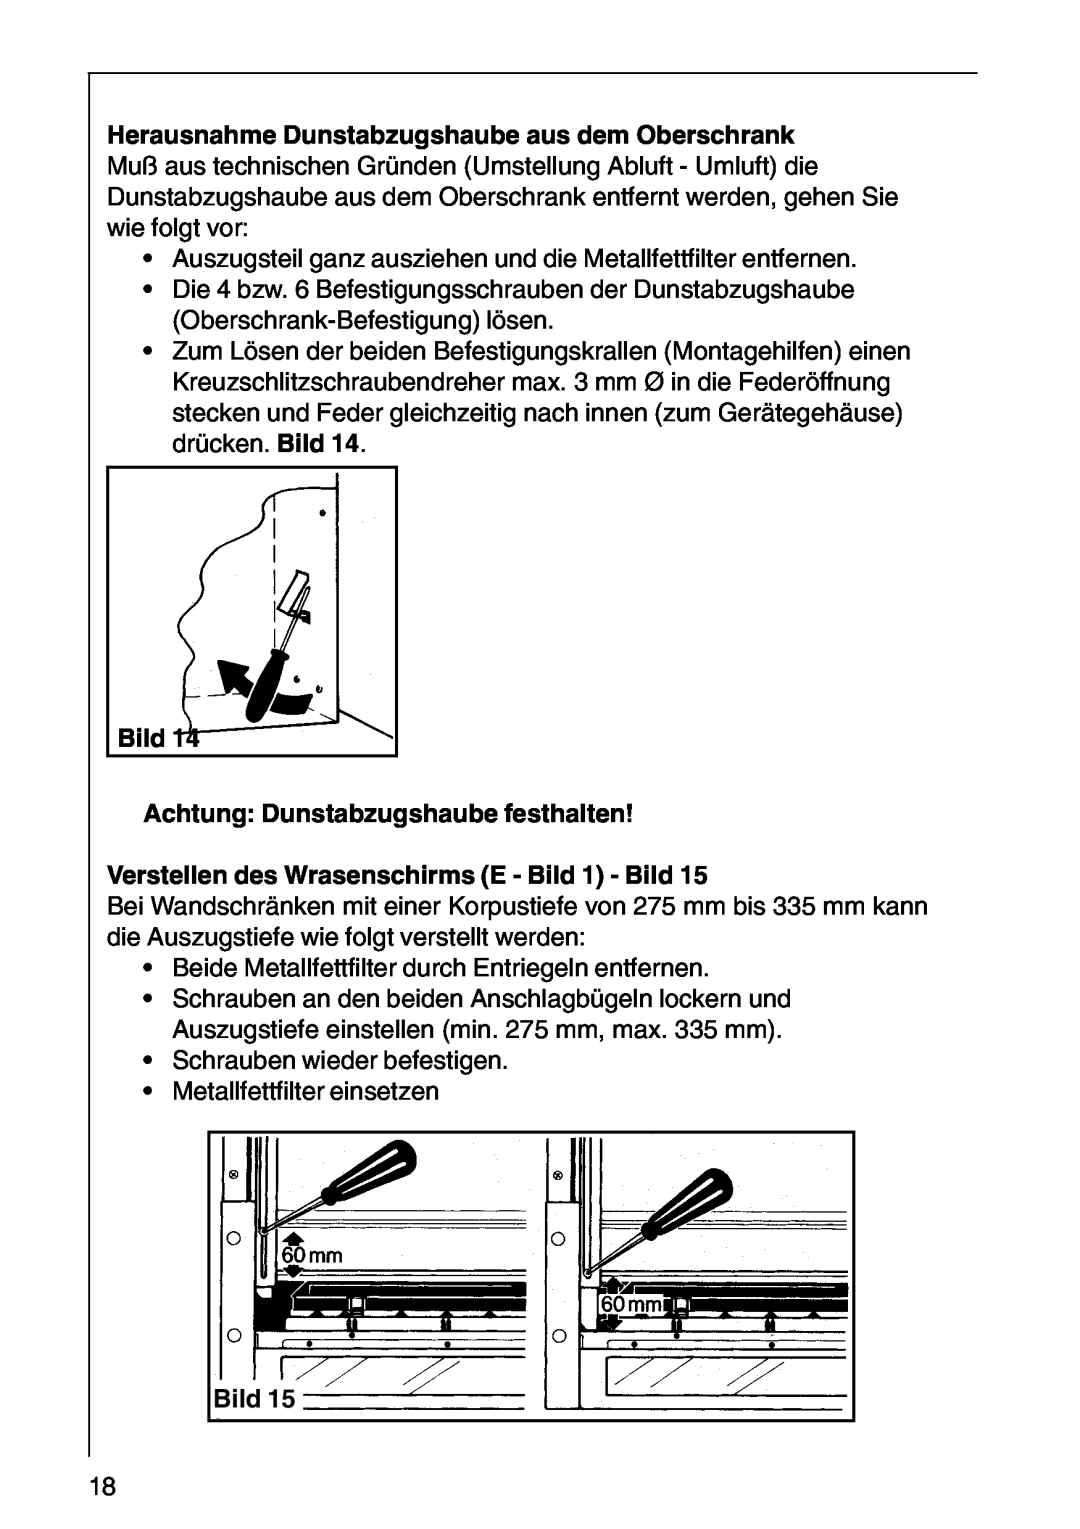 AEG CHDF 6260, DF 6160 Bild Achtung Dunstabzugshaube festhalten, Verstellen des Wrasenschirms E - Bild 1 - Bild 